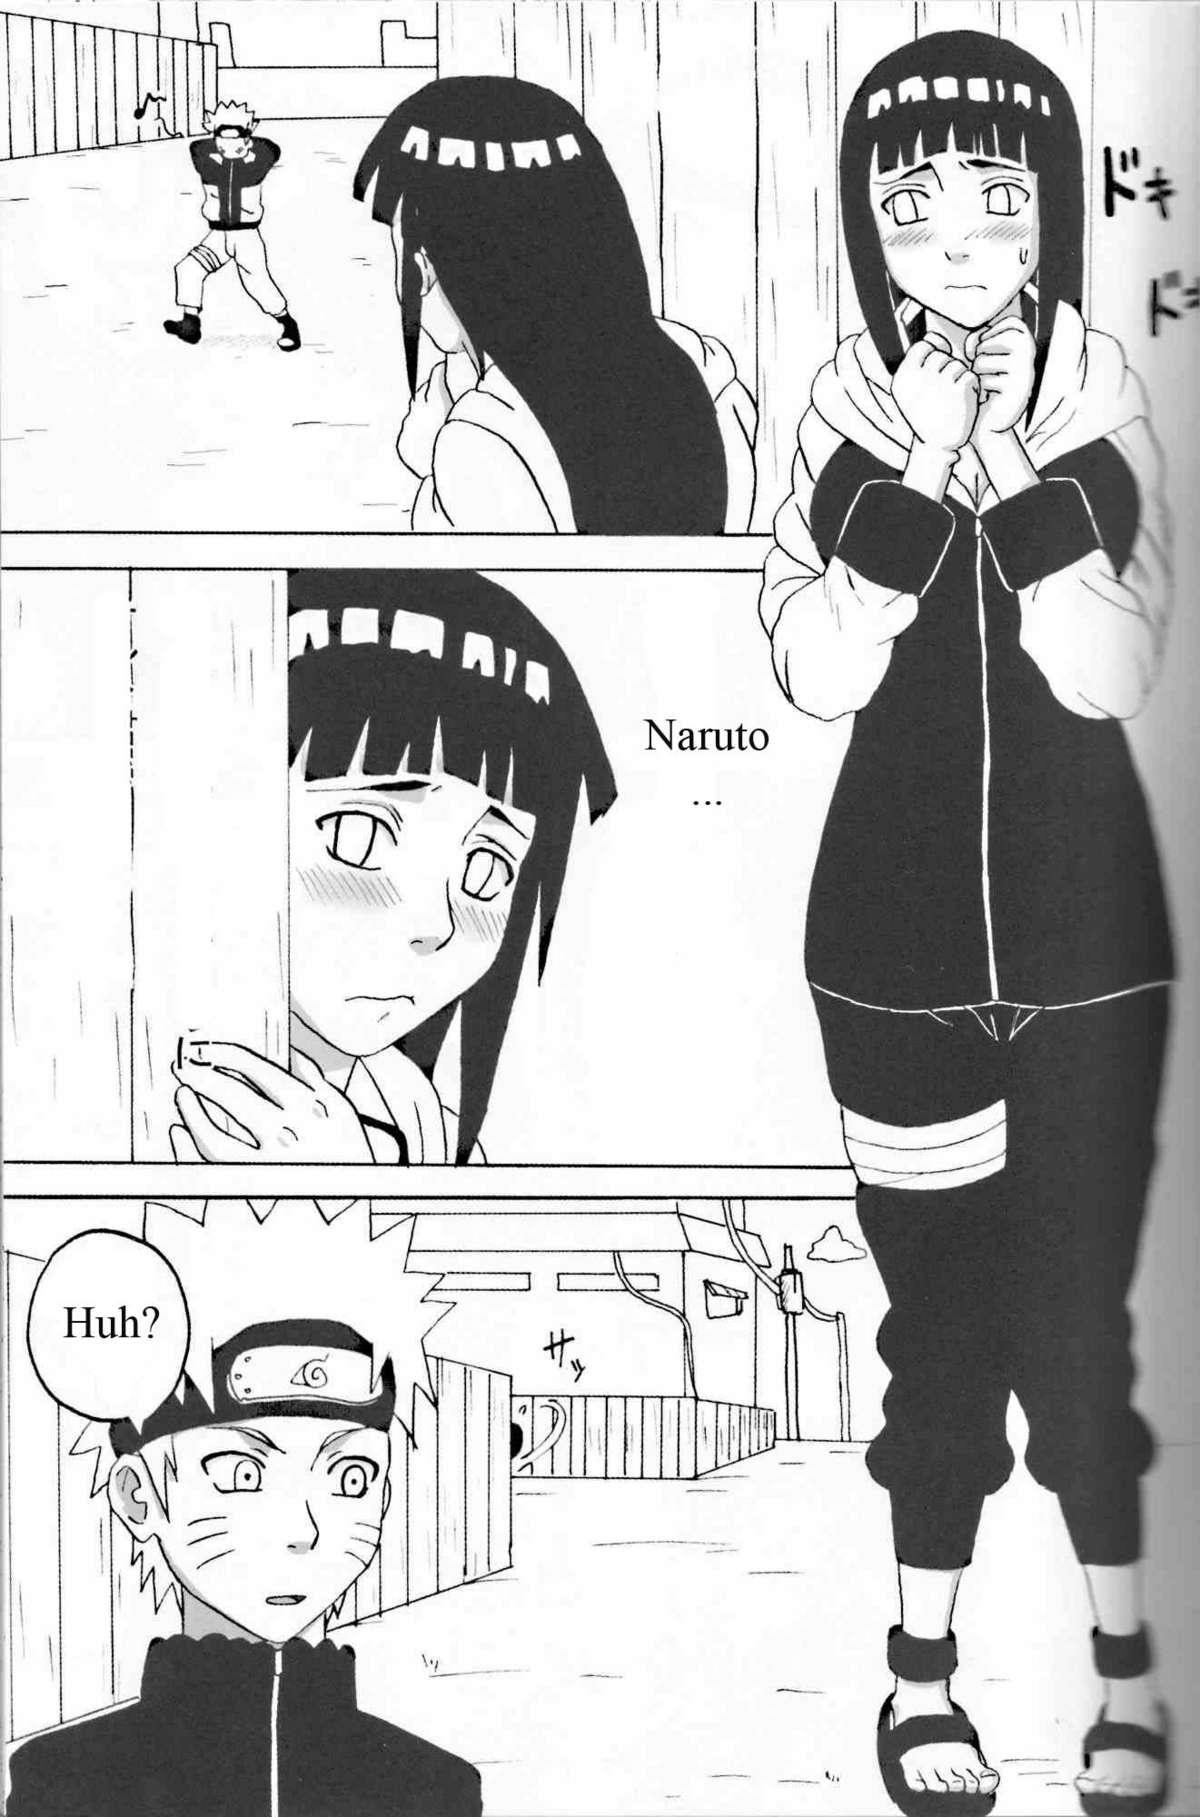 Pornstar Hinata Fight - Naruto Natural - Page 2